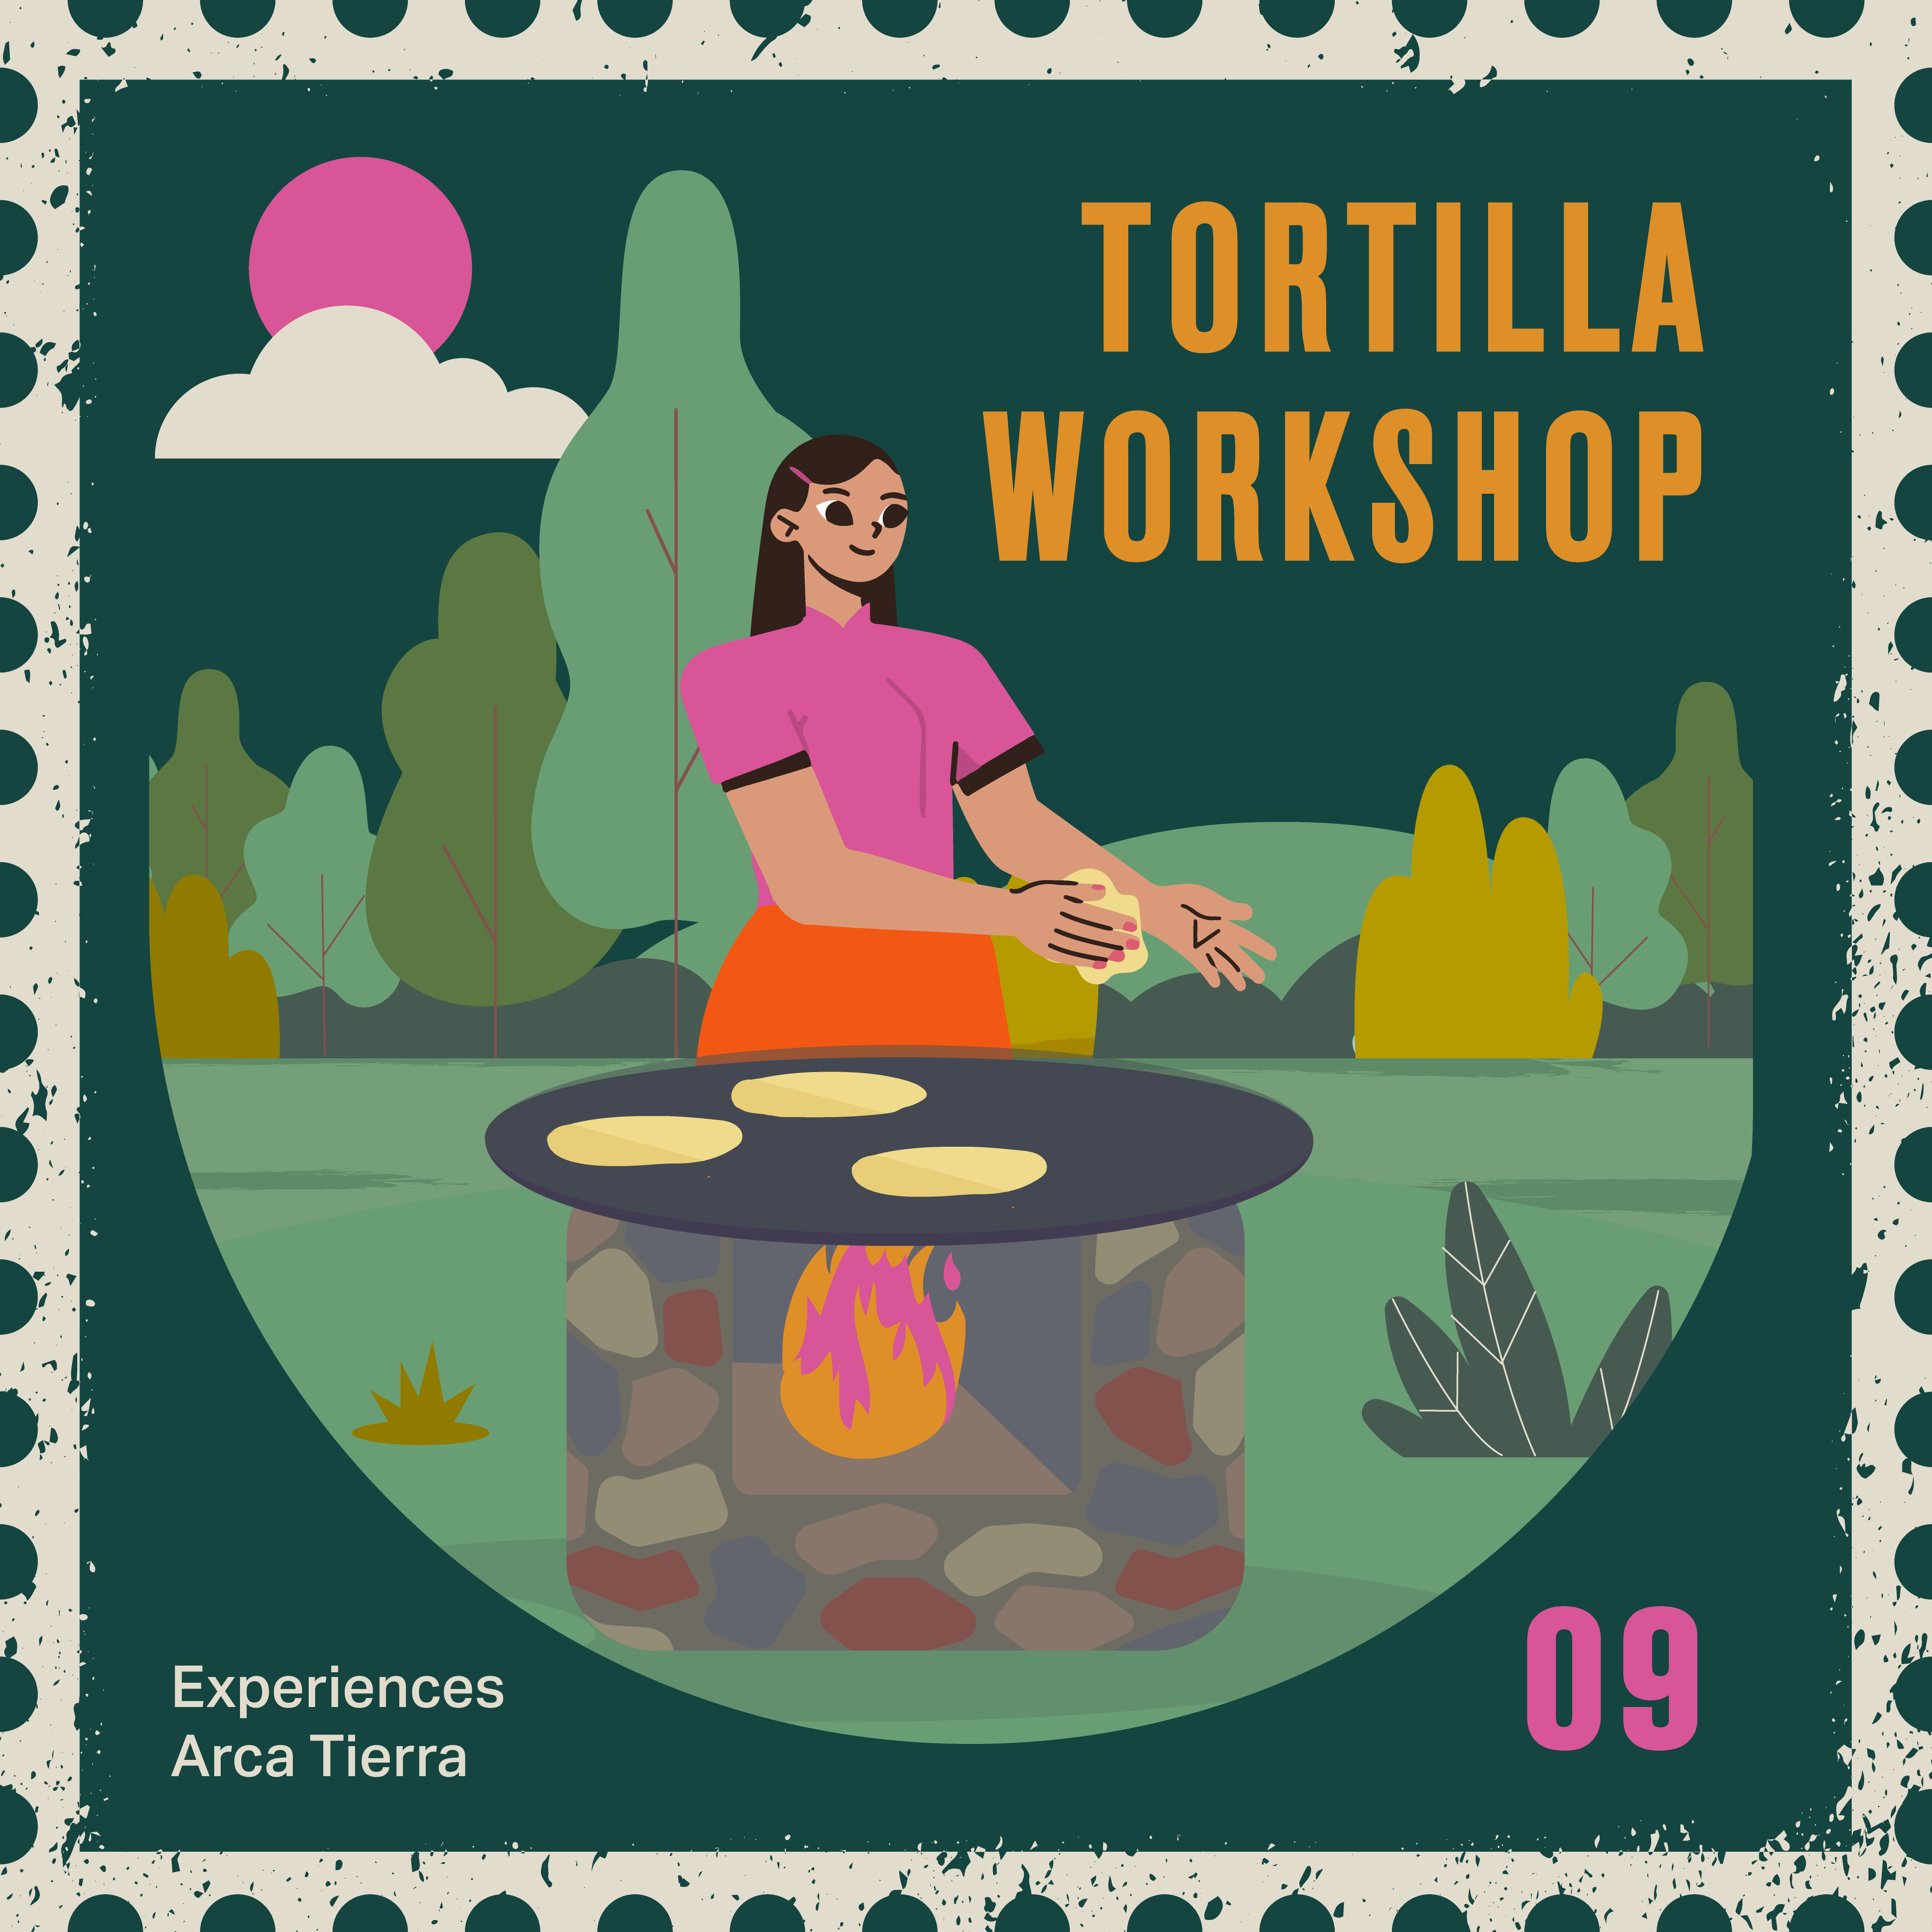 Tortilla workshop